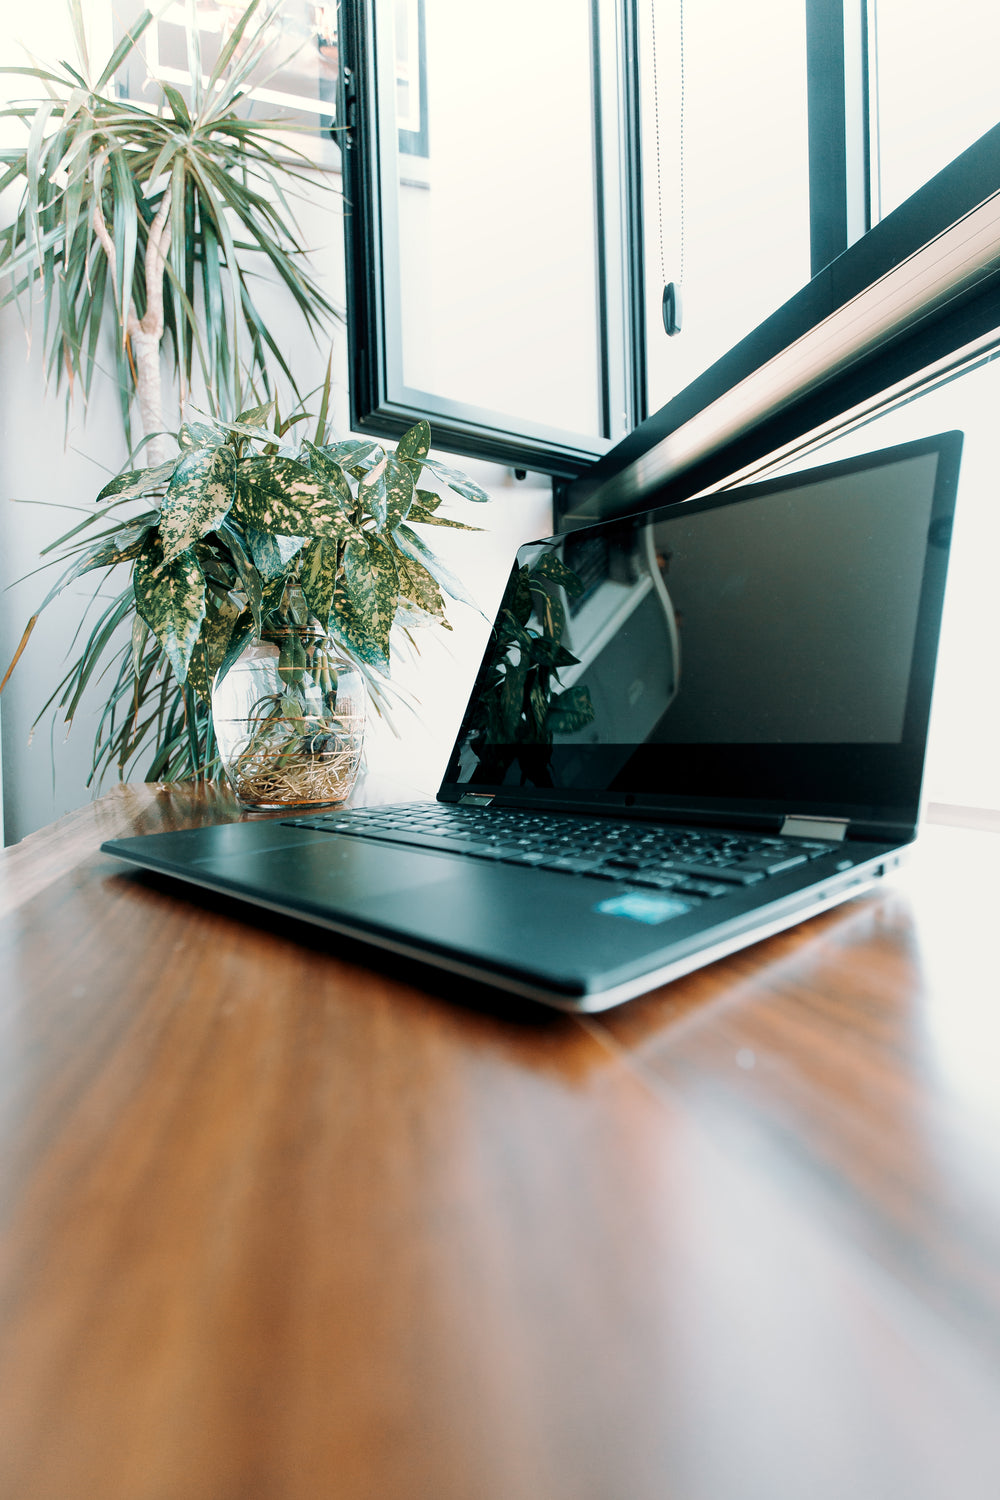 open laptop on a wooden desk under window